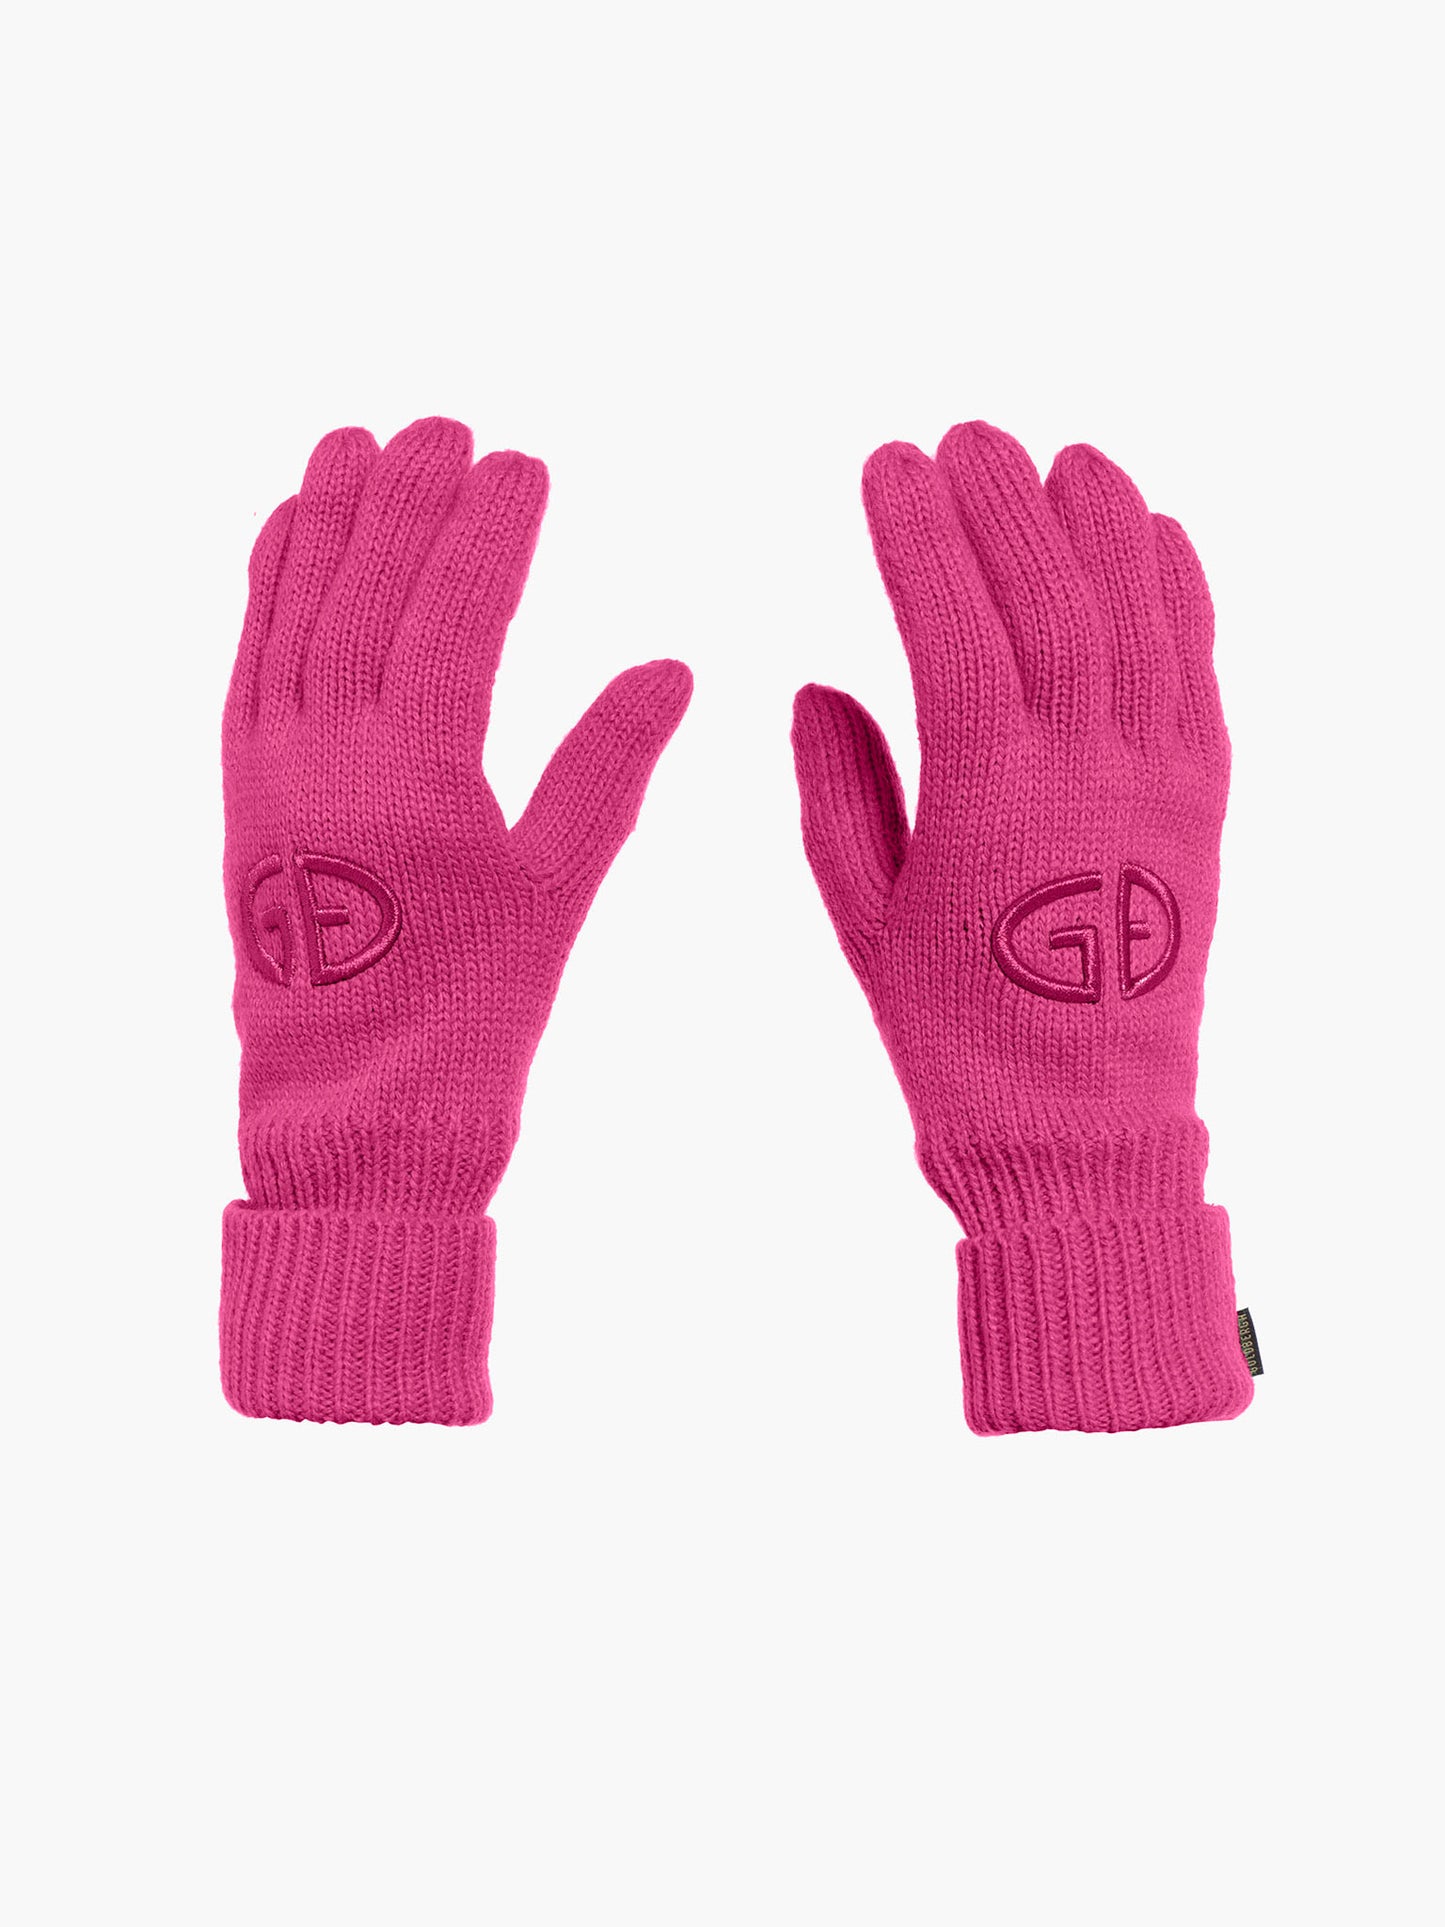 VANITY gloves